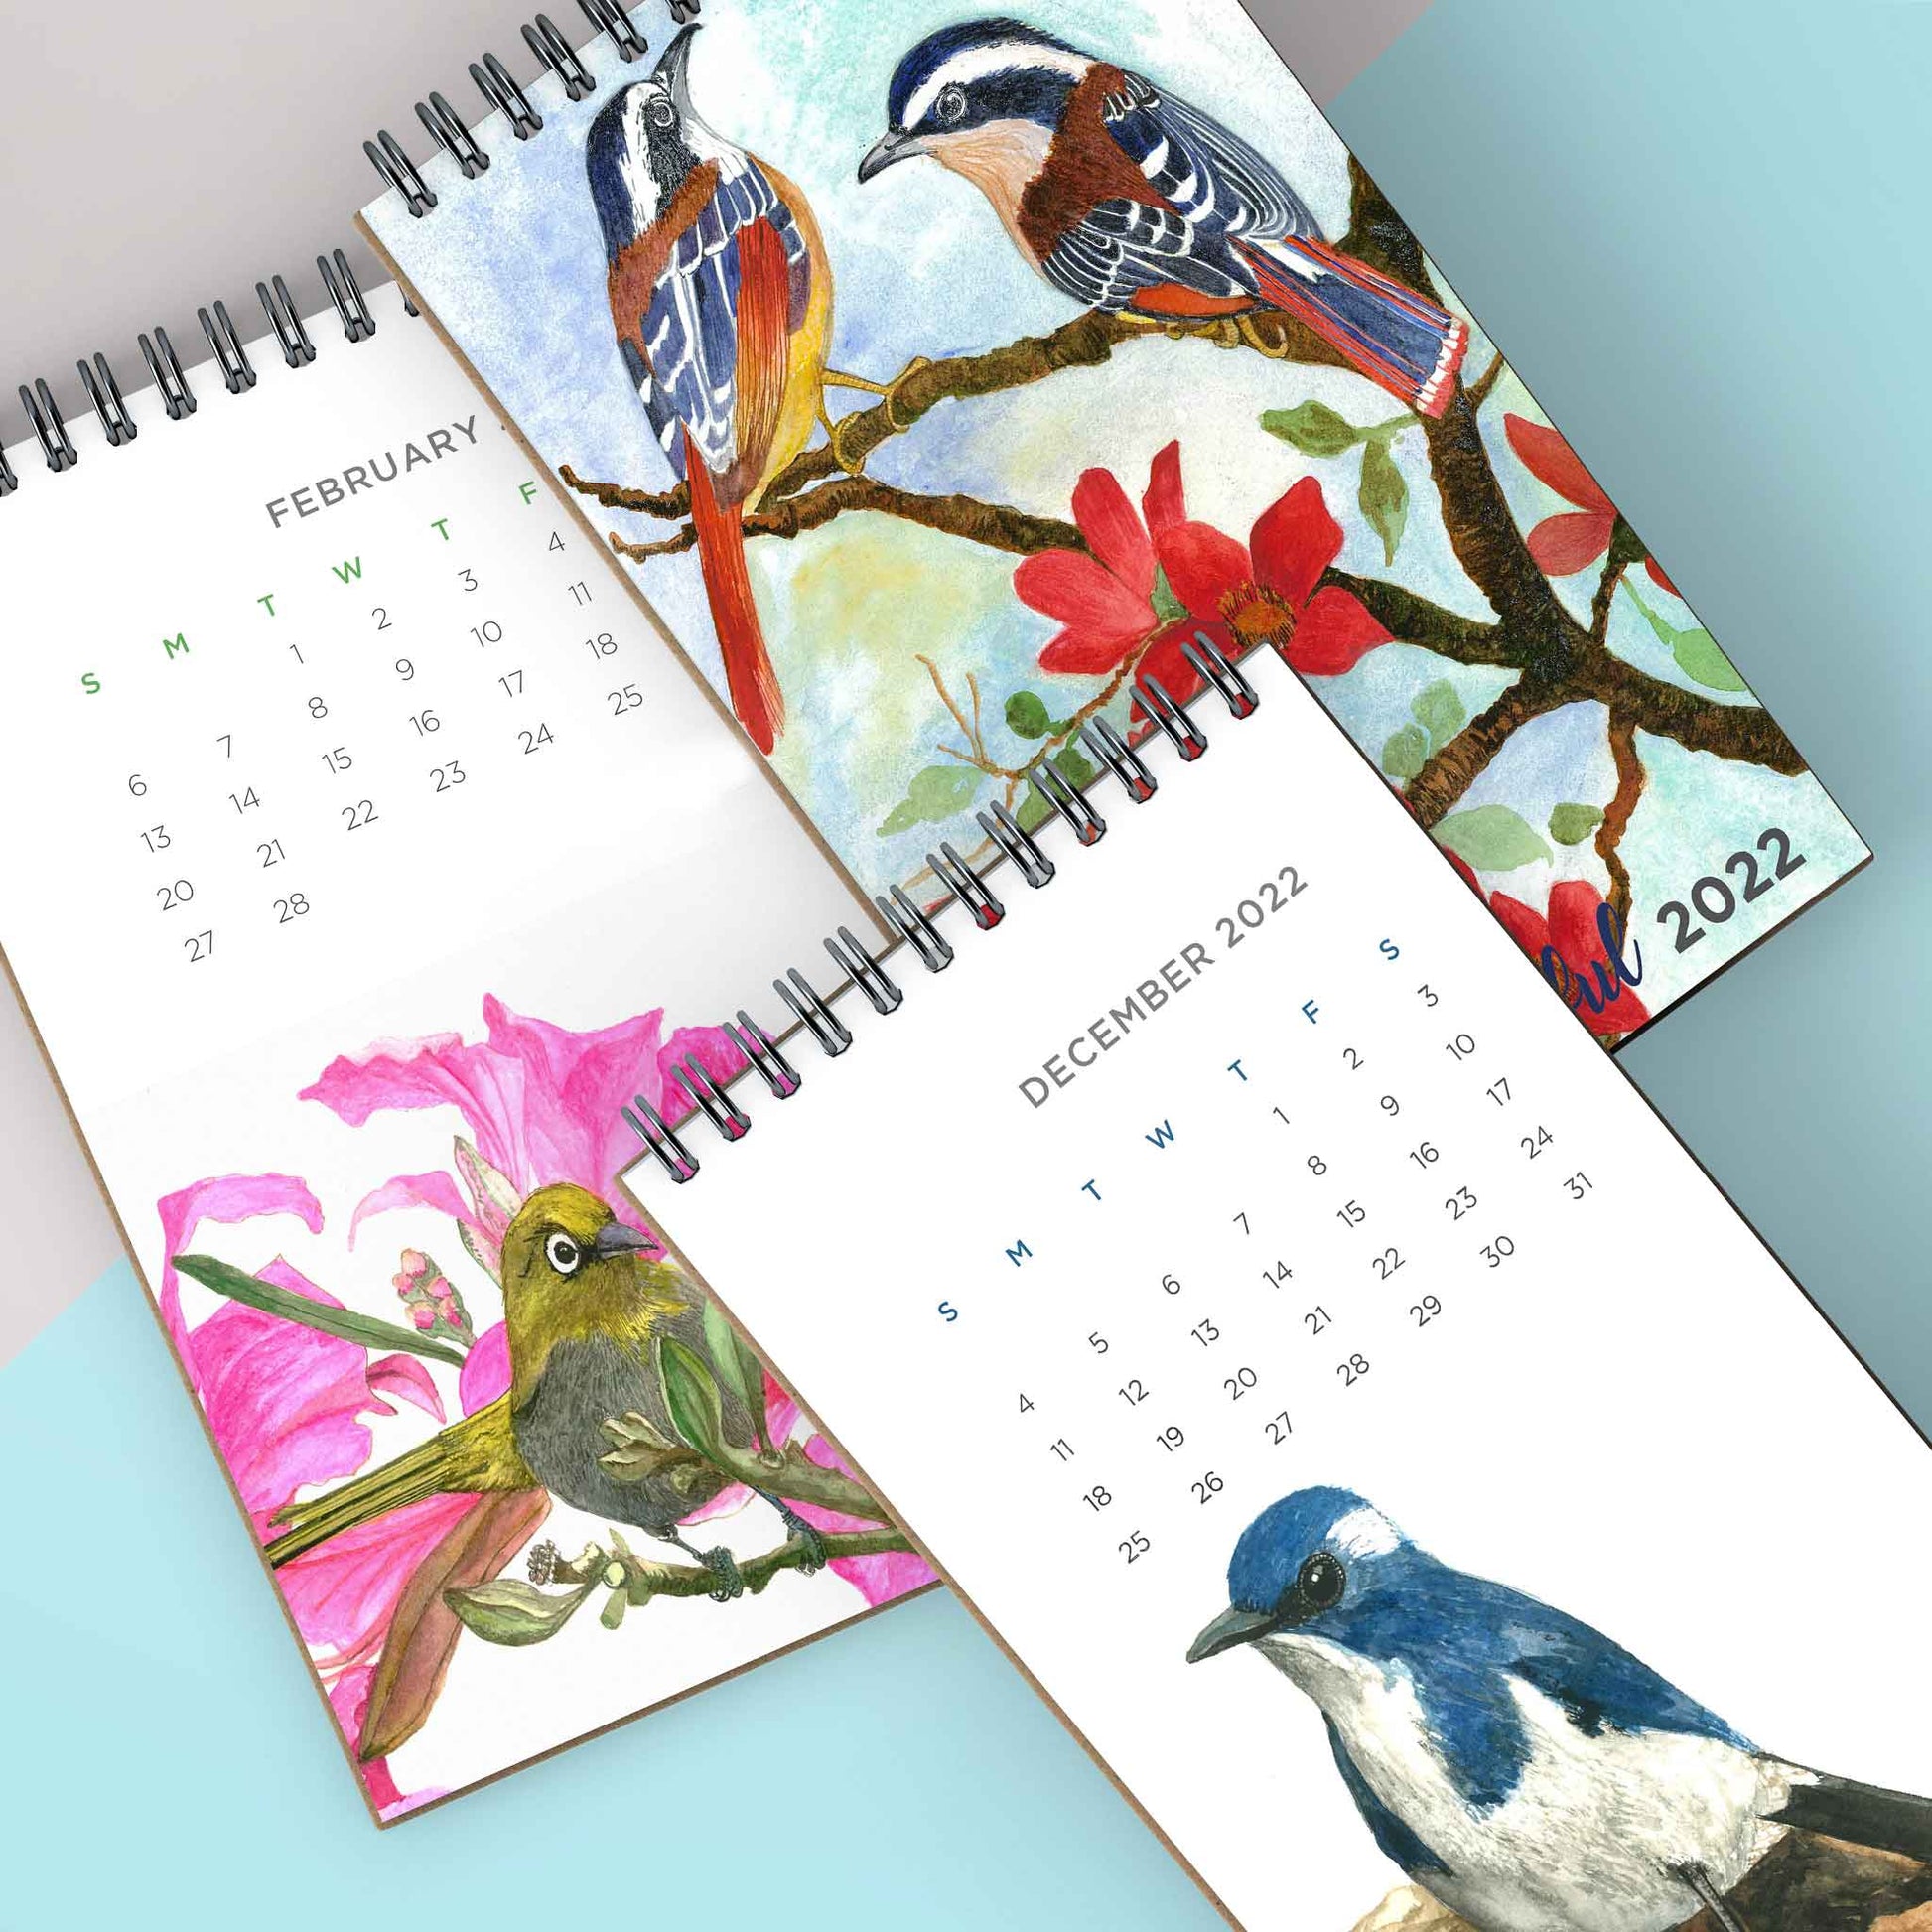 2022 calendar birds of india